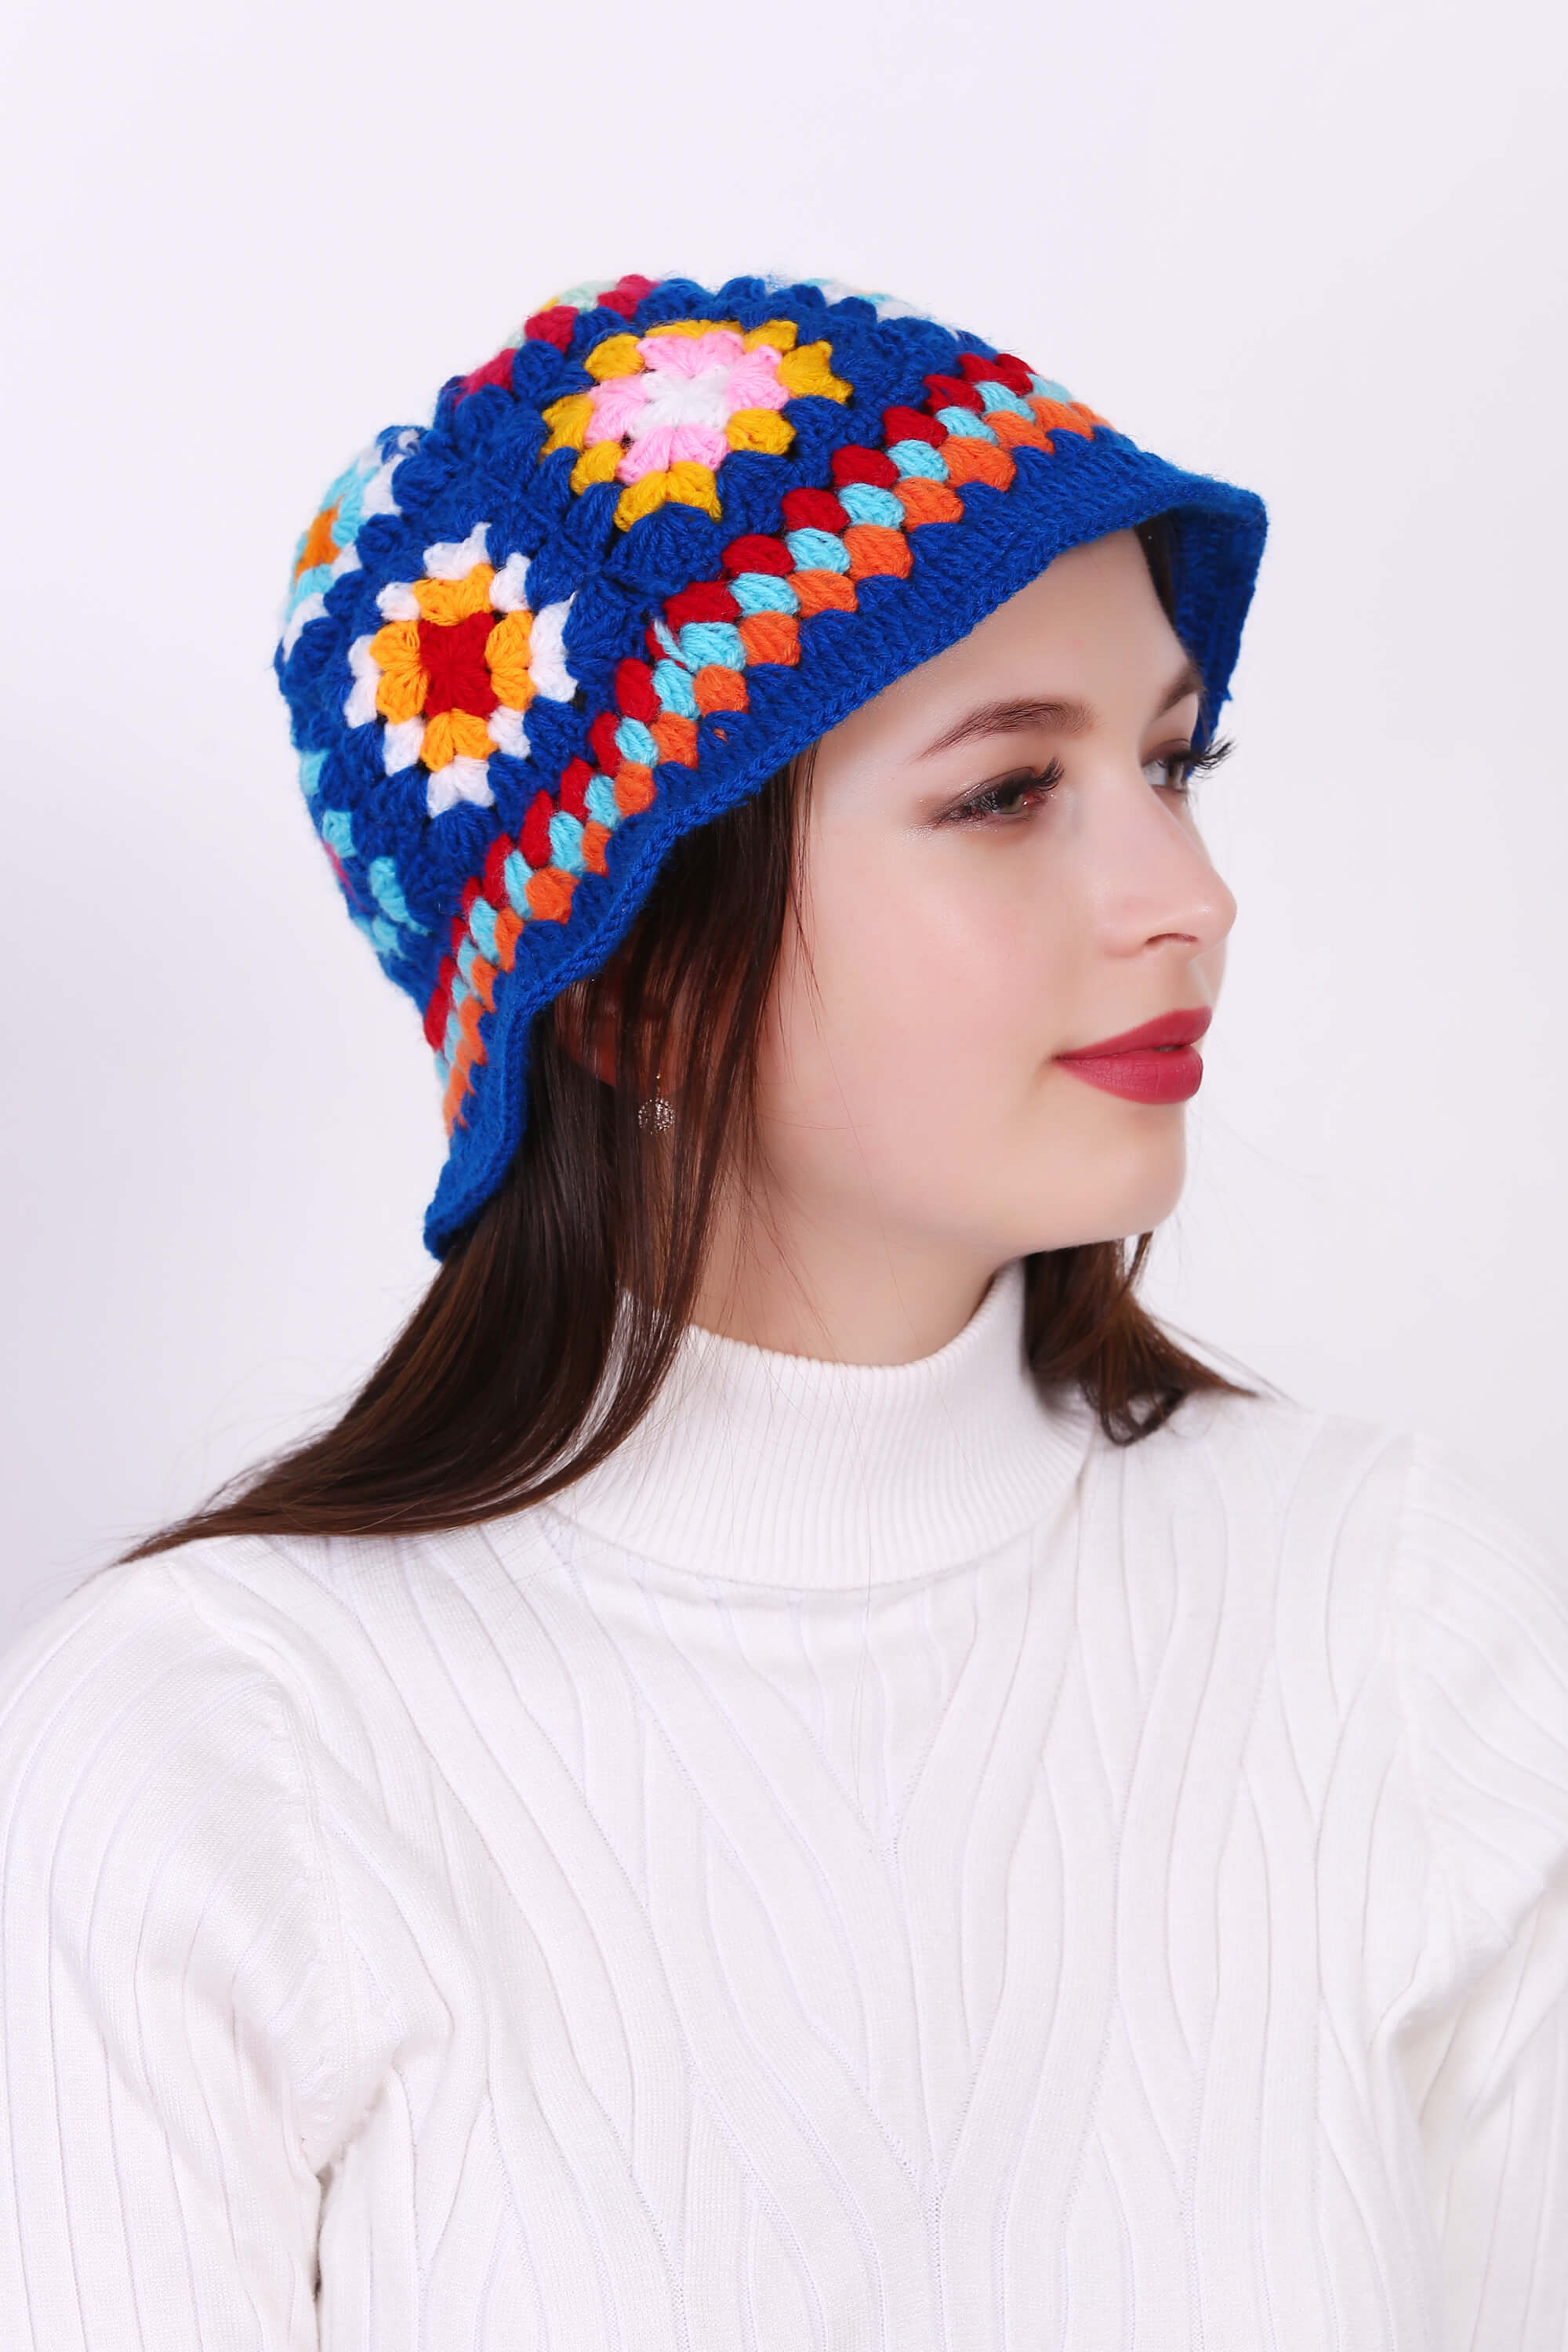 Charming Granny Crochet Cap